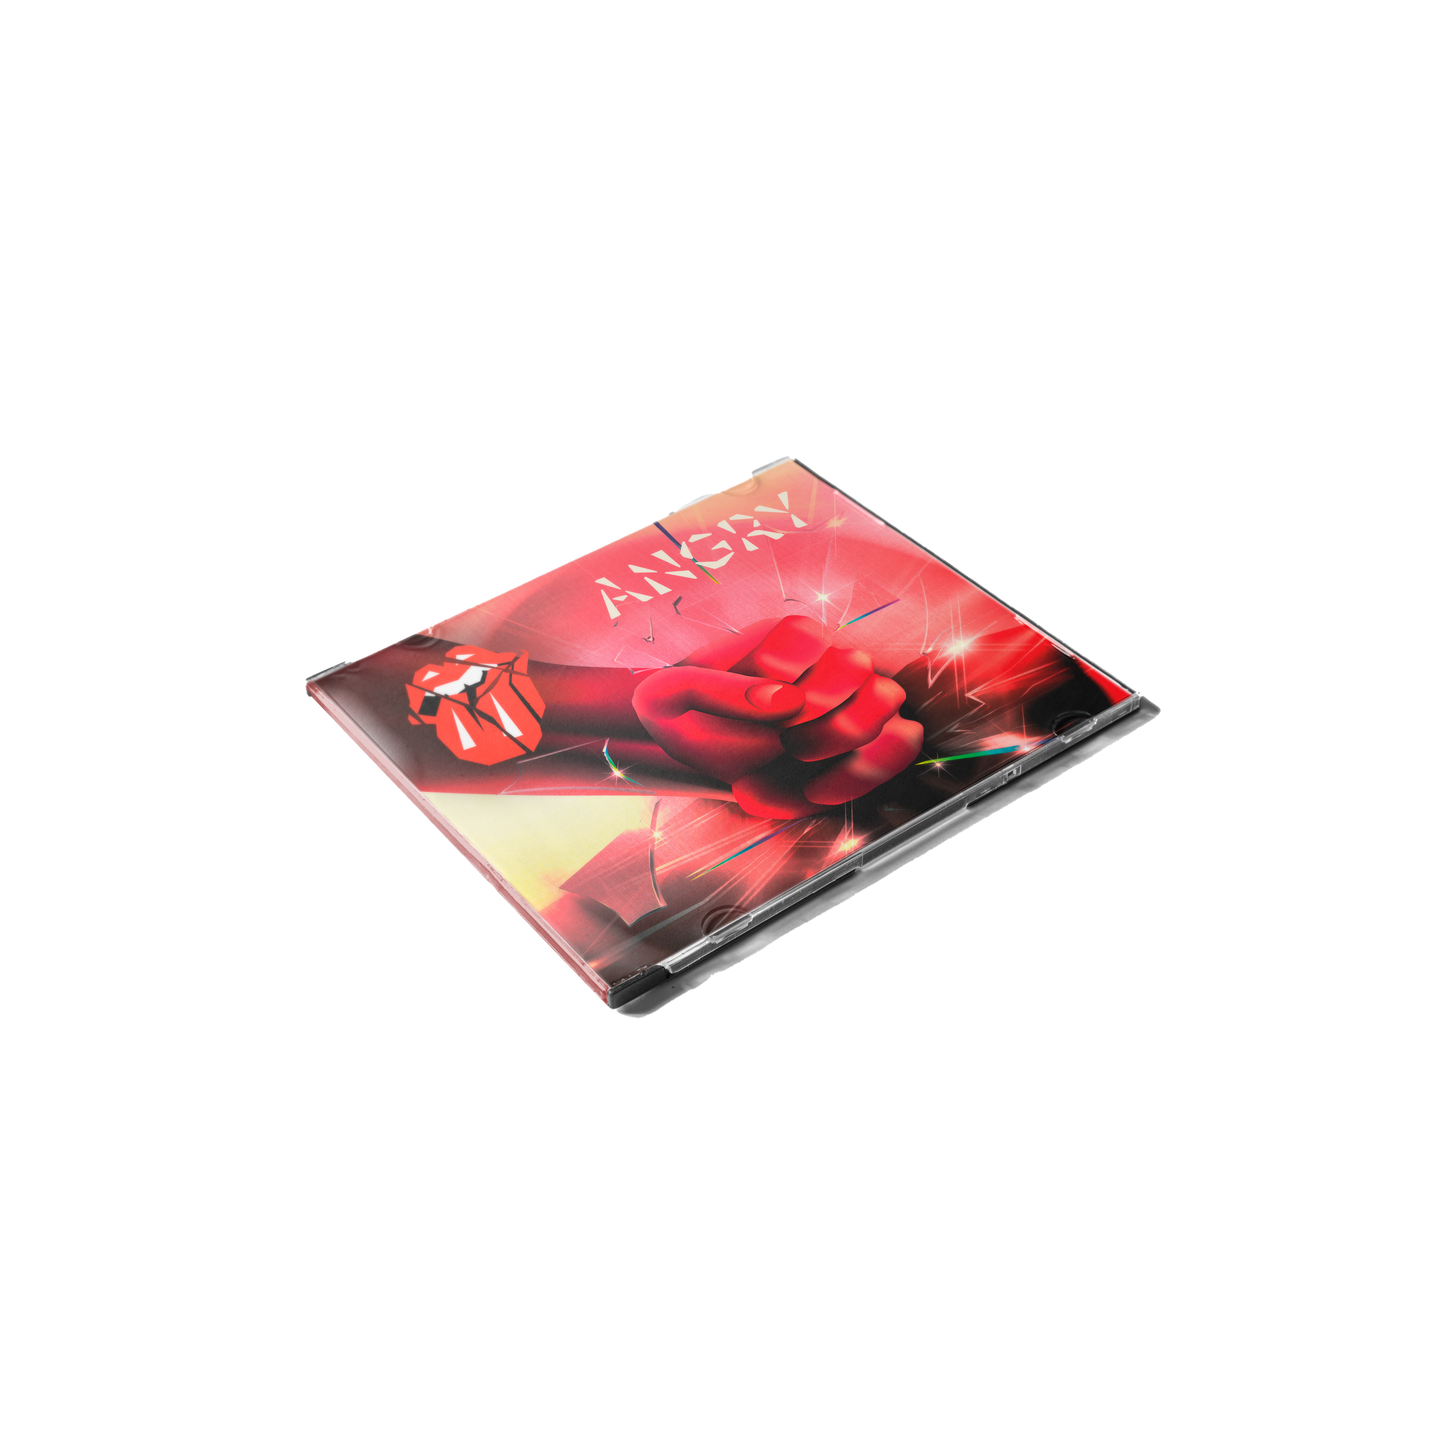 Angry - CD (CD Single)